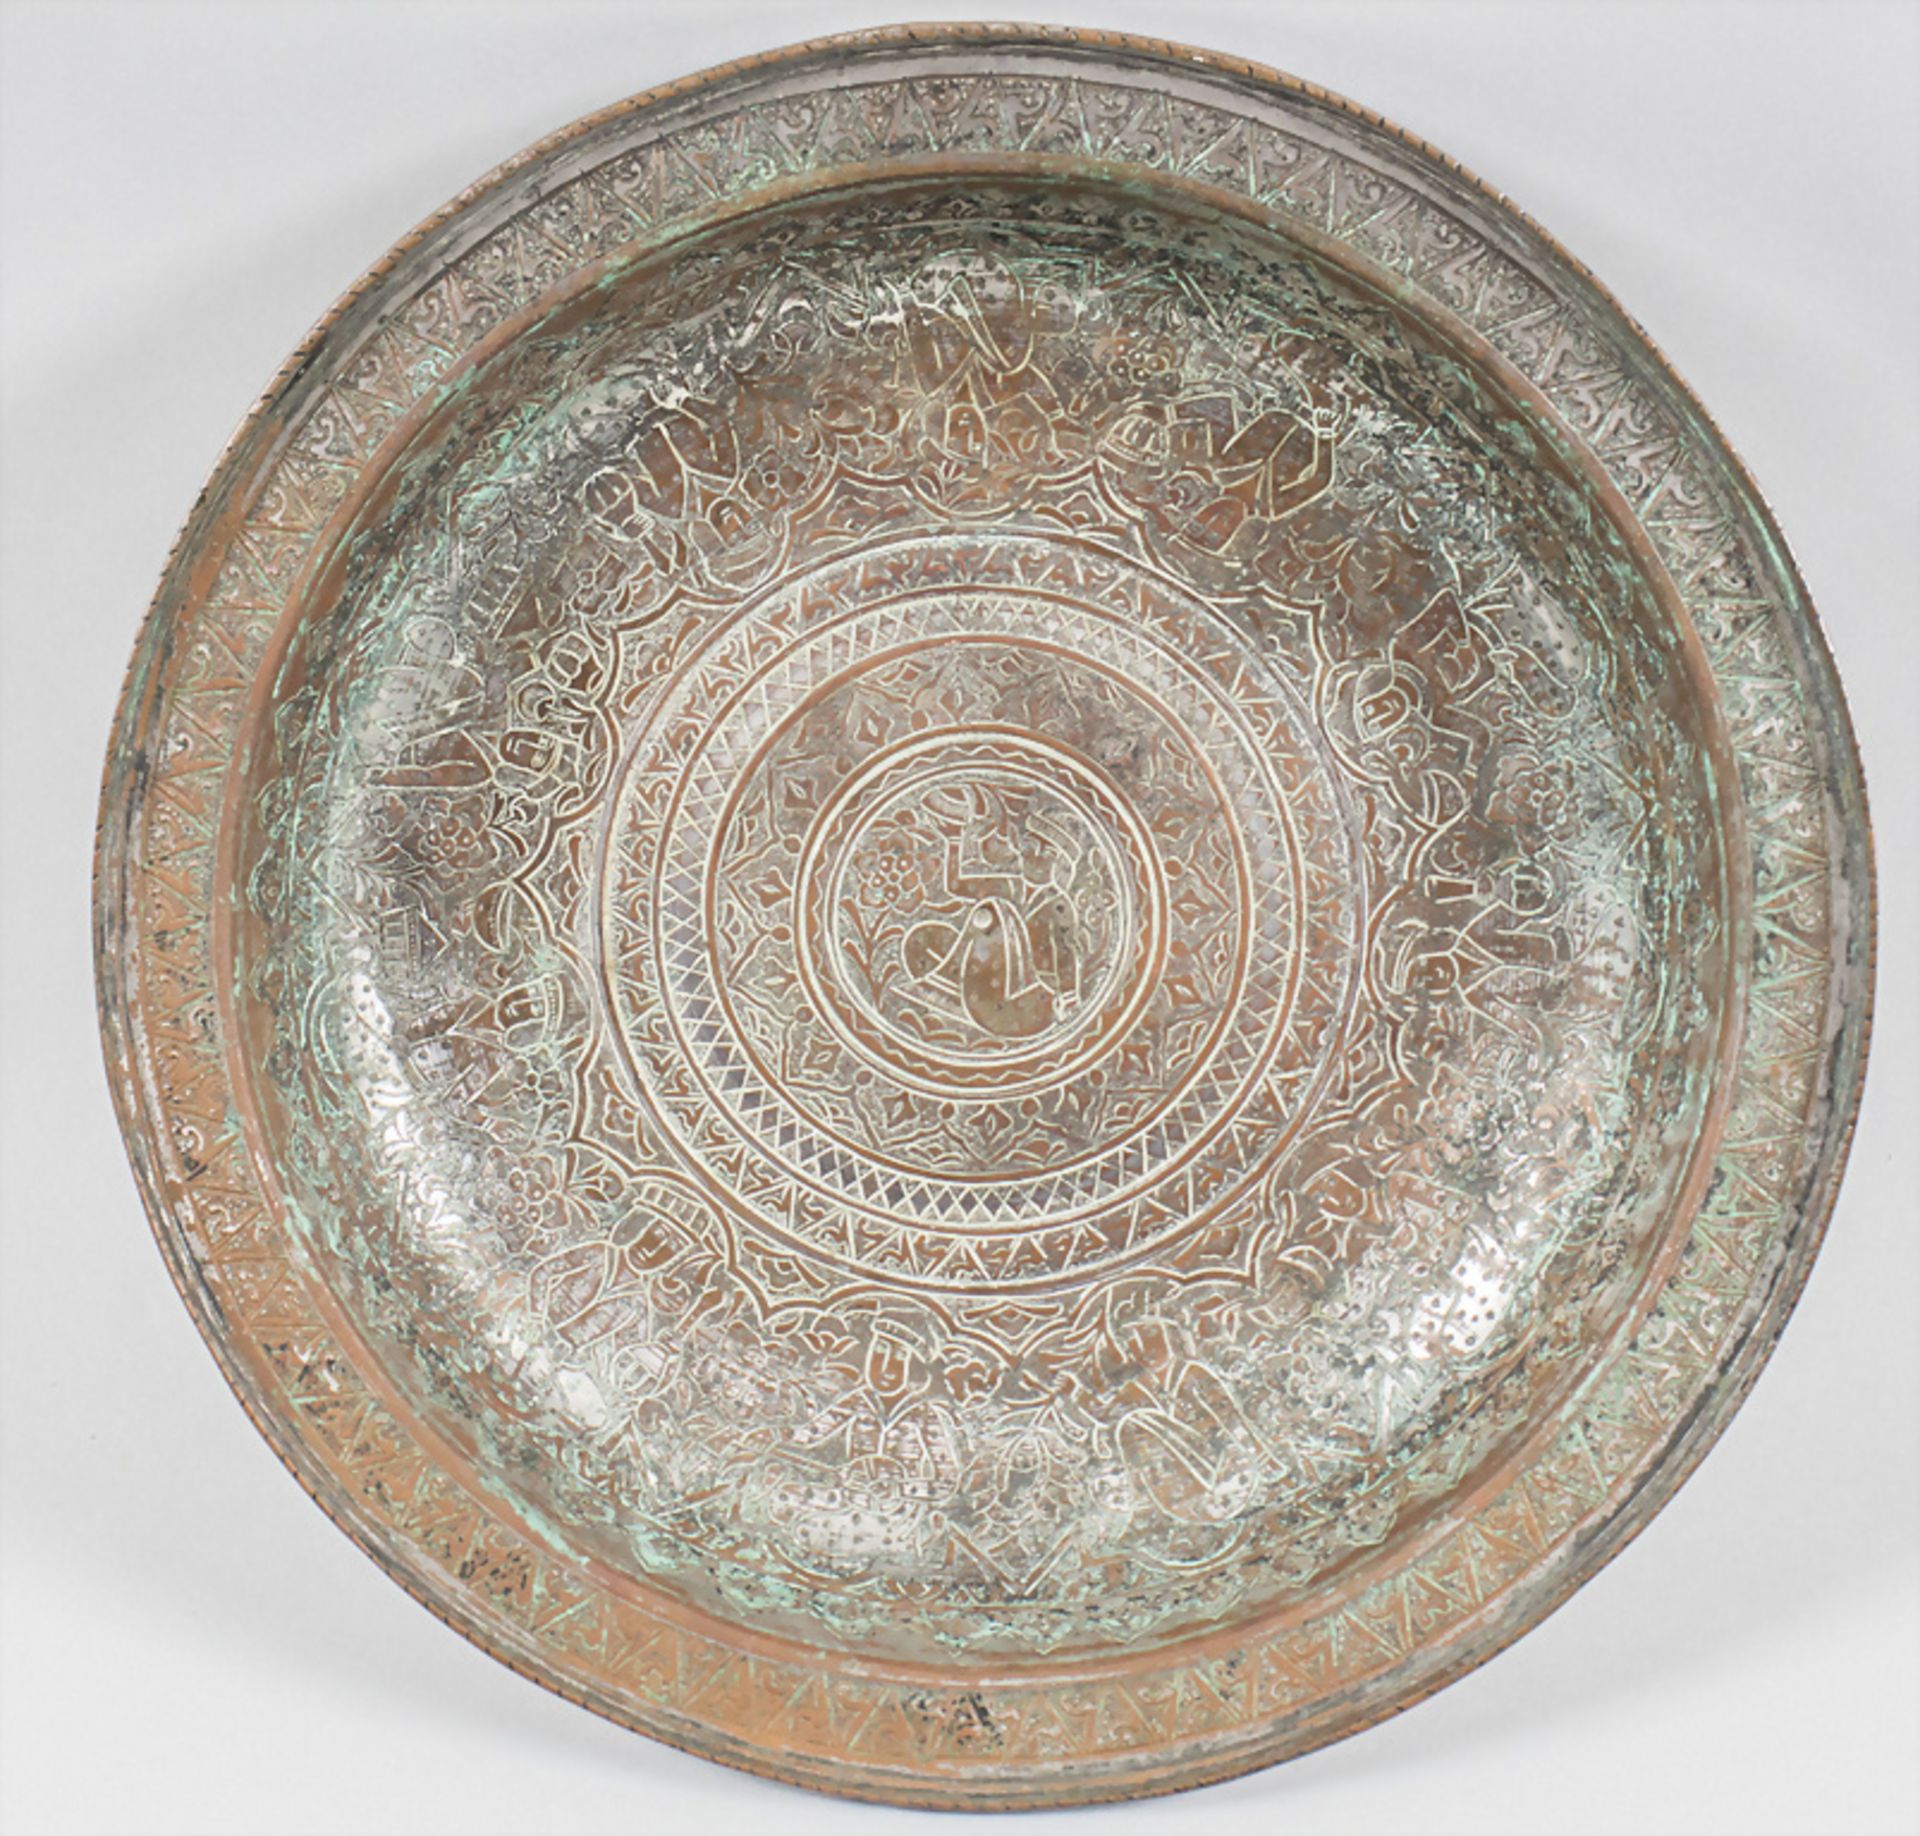 Schale / A bowl,, Orient, 16./17. Jh.